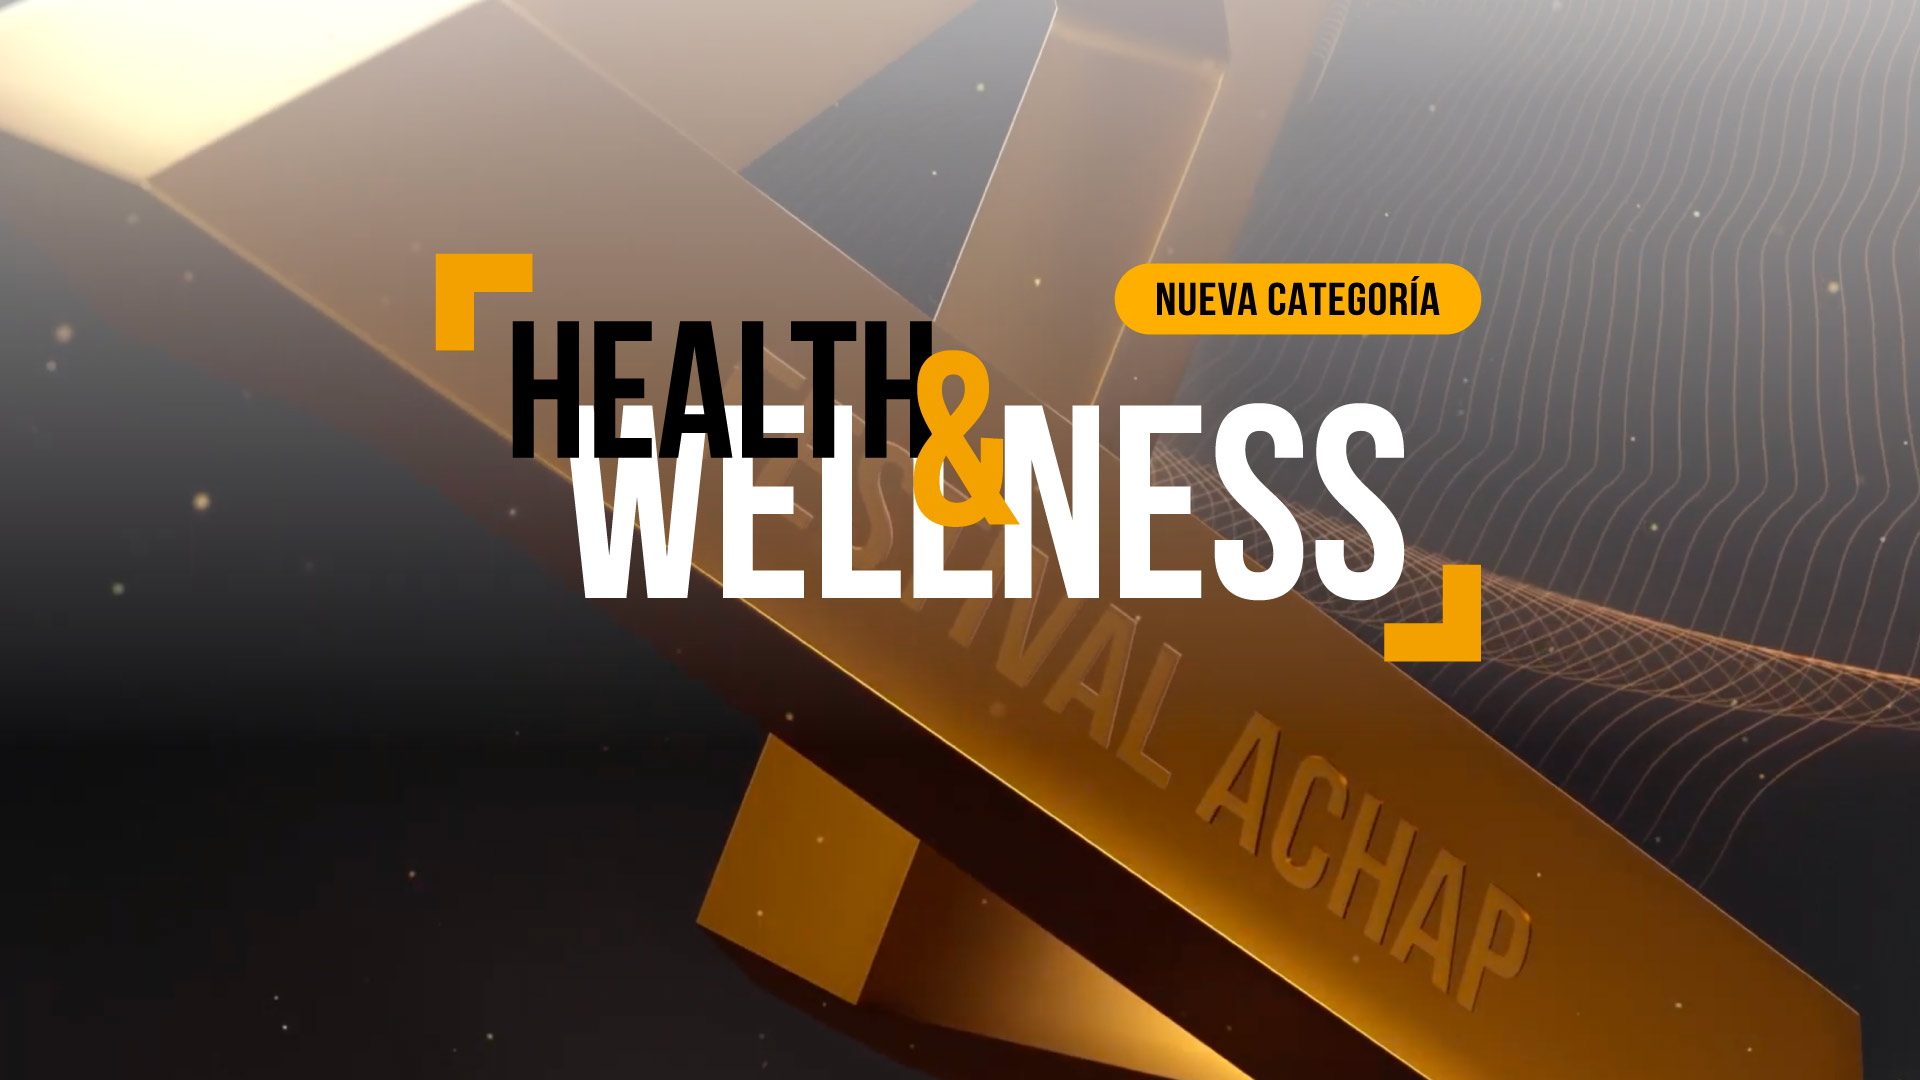 El Festival de Creatividad de Chile presenta su nueva categoría: “Health & Wellness”